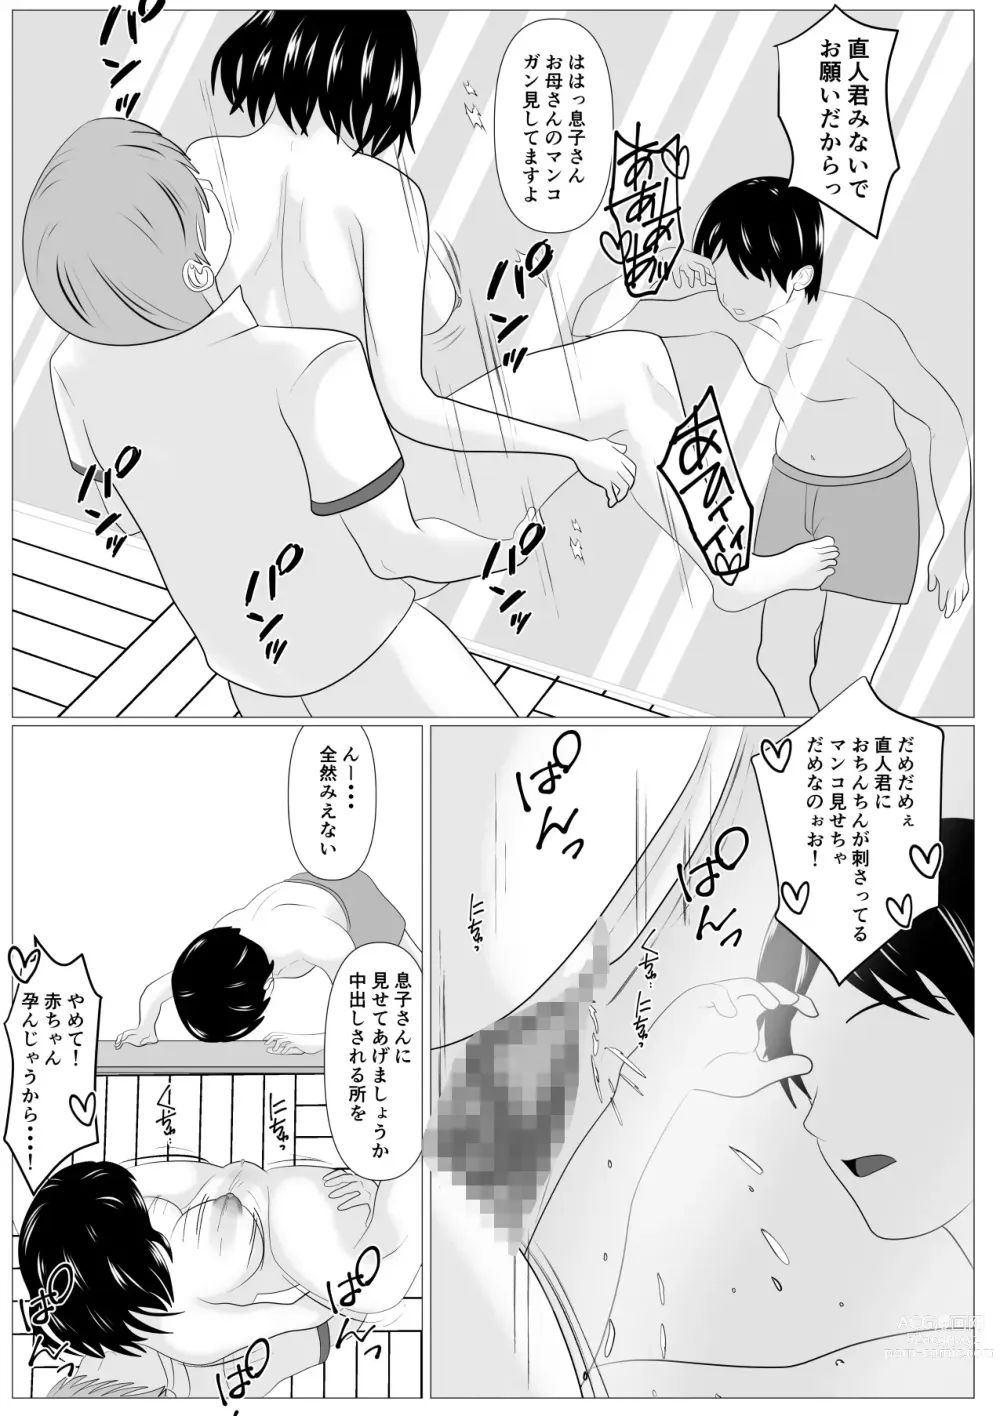 Page 69 of doujinshi Kazoku Torare